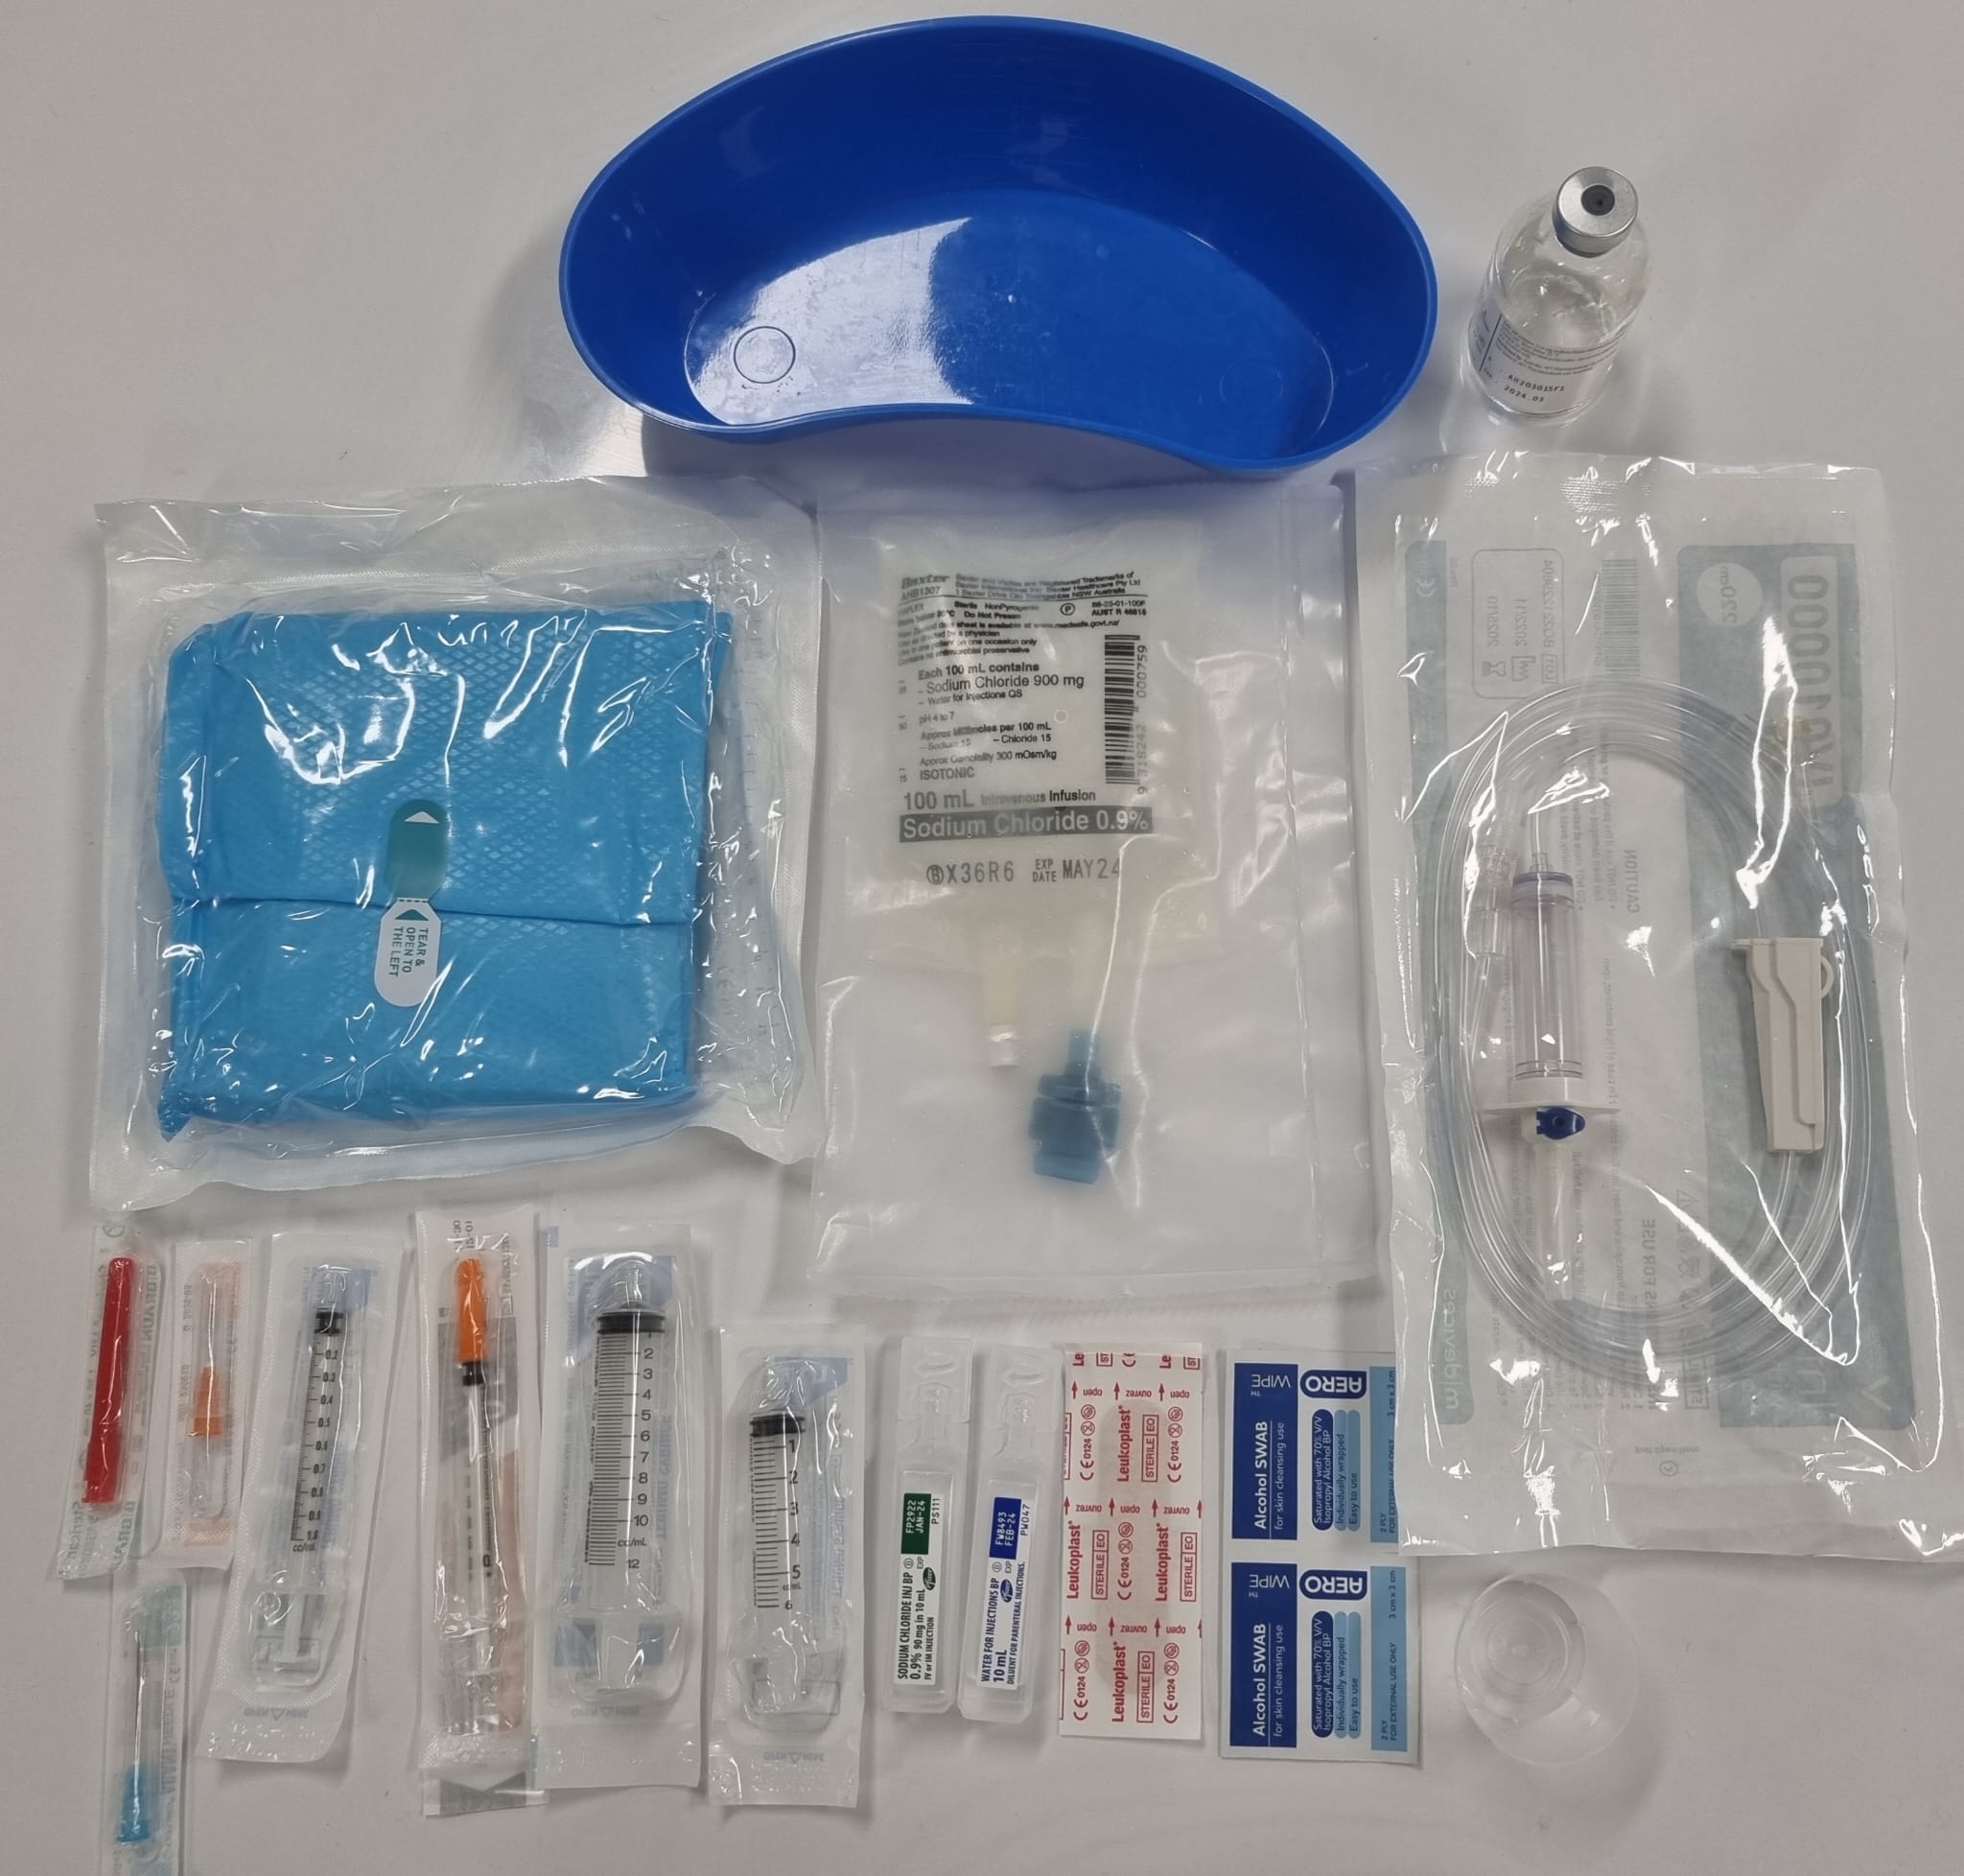 BASIC OSCE Practice Kit